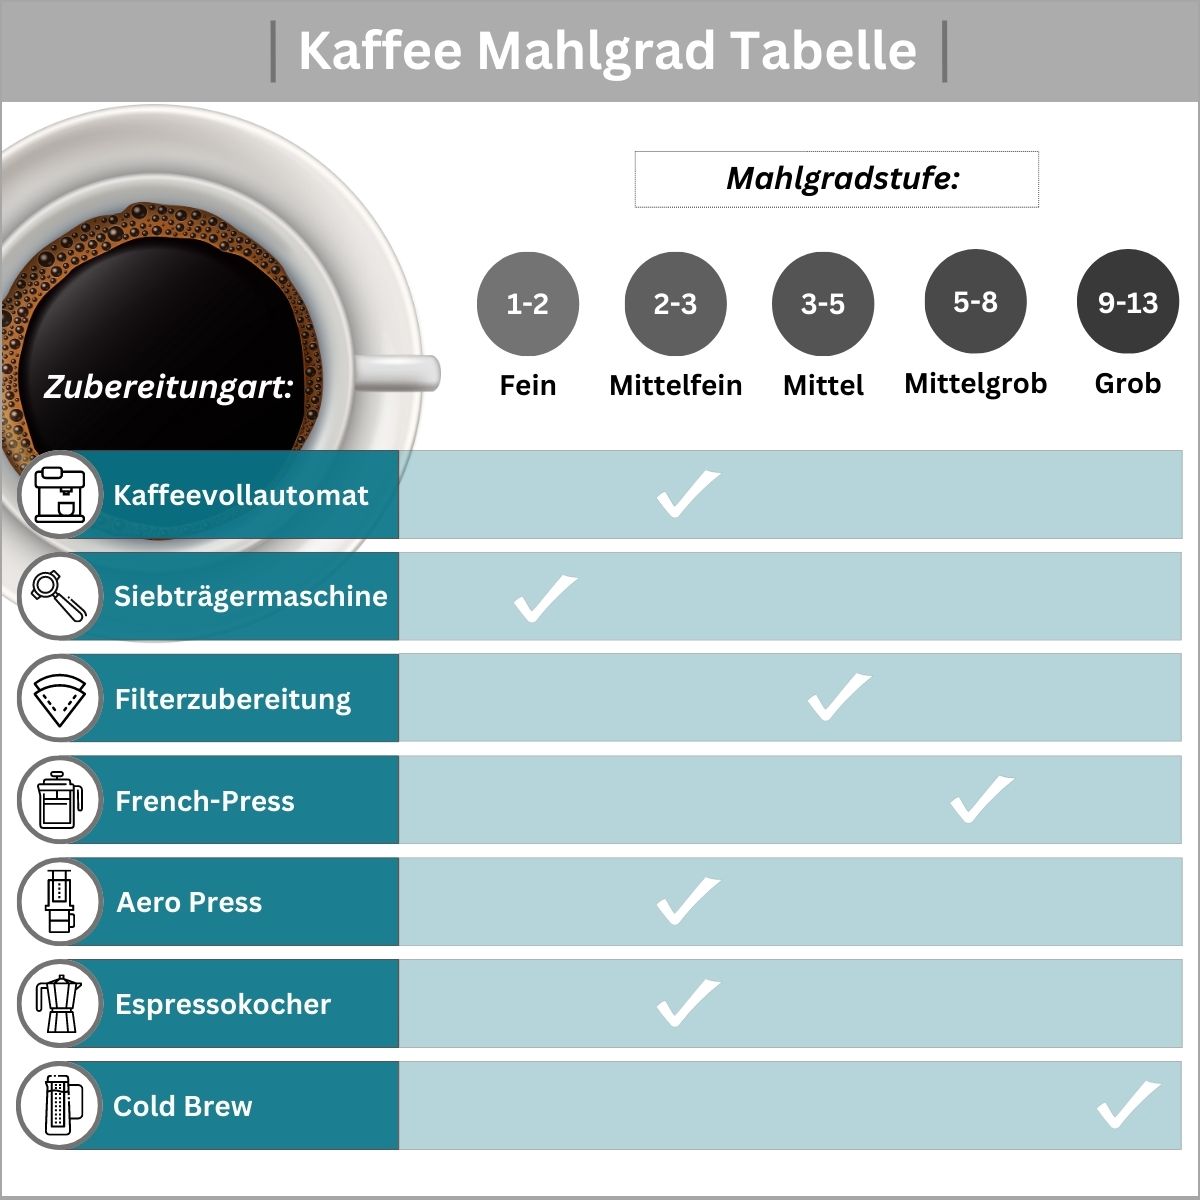 Kaffee Mahlgrad Tabelle nach Zubereitungsart